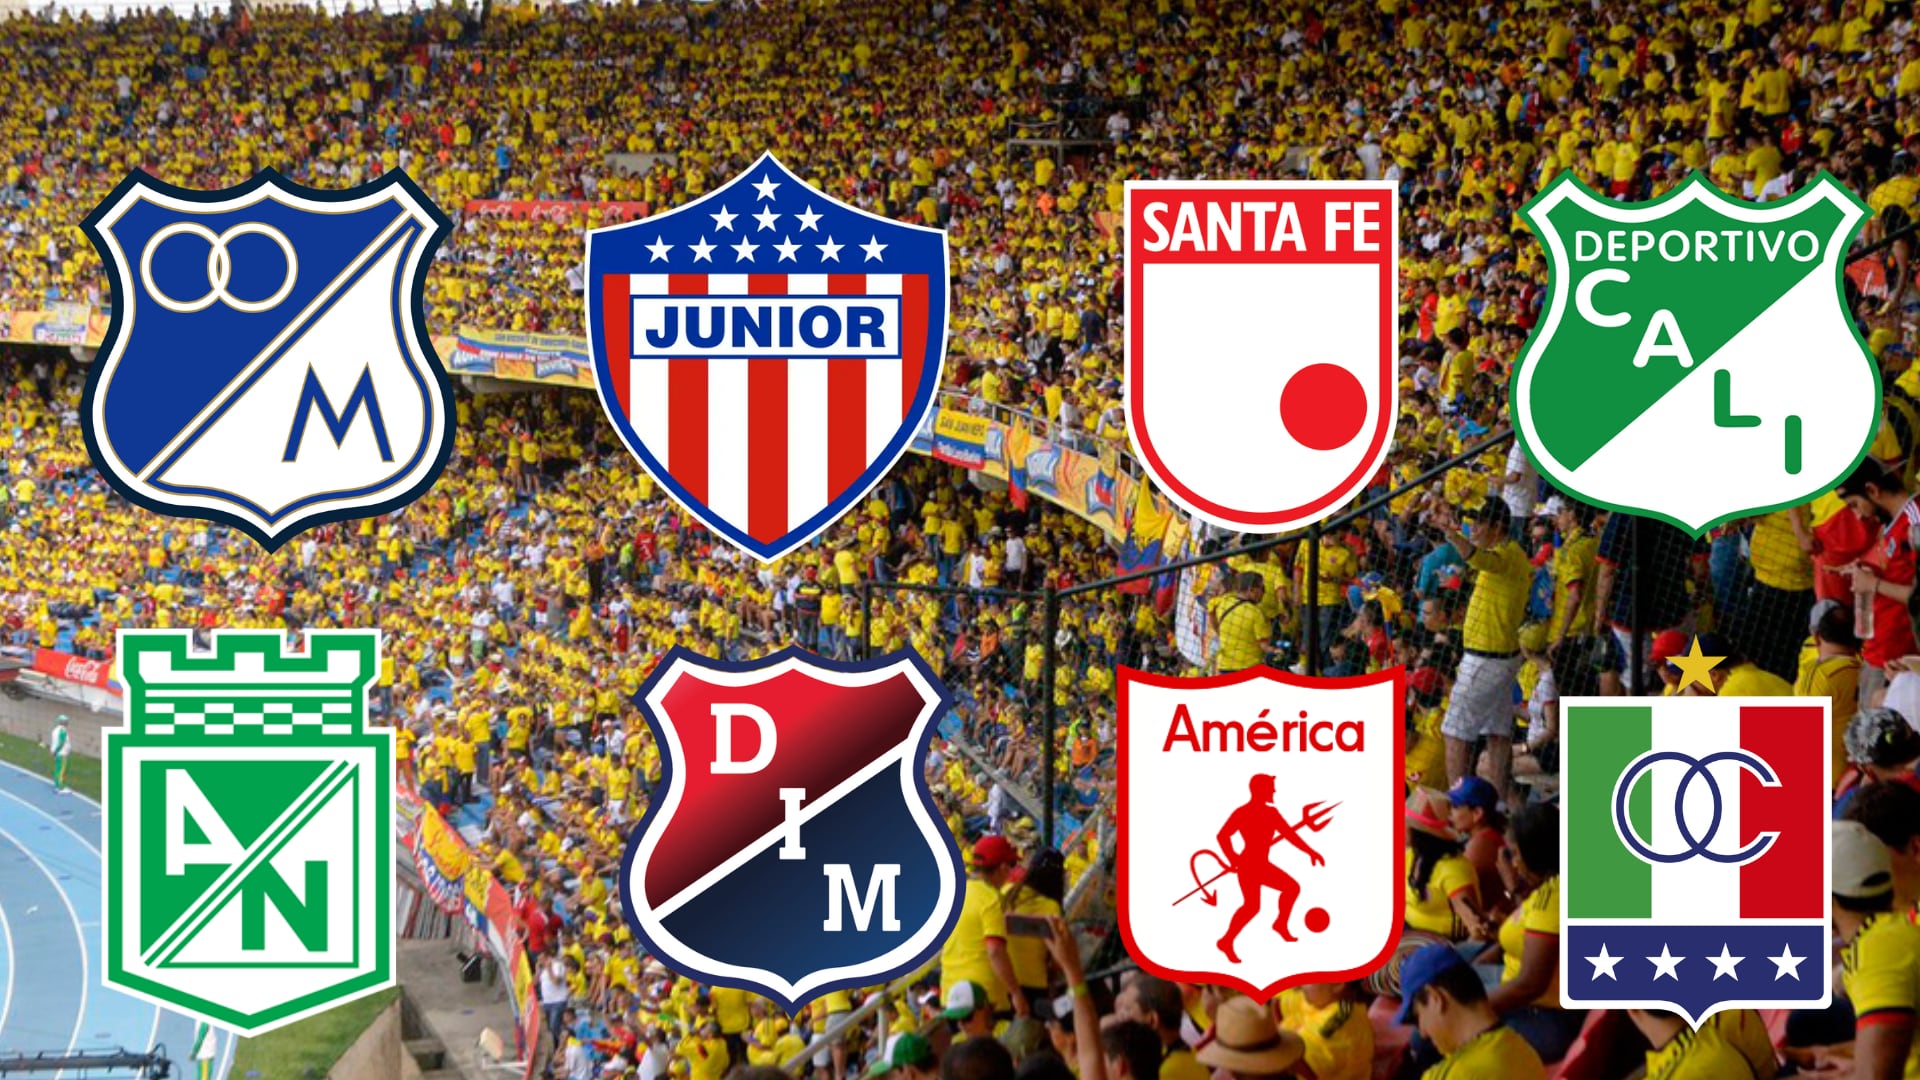 Deportivo Cali, uno de los grandes del fútbol colombiano, se encuentra en riesgo de descender - crédito Felipe Cubillos / Montaje Infobae